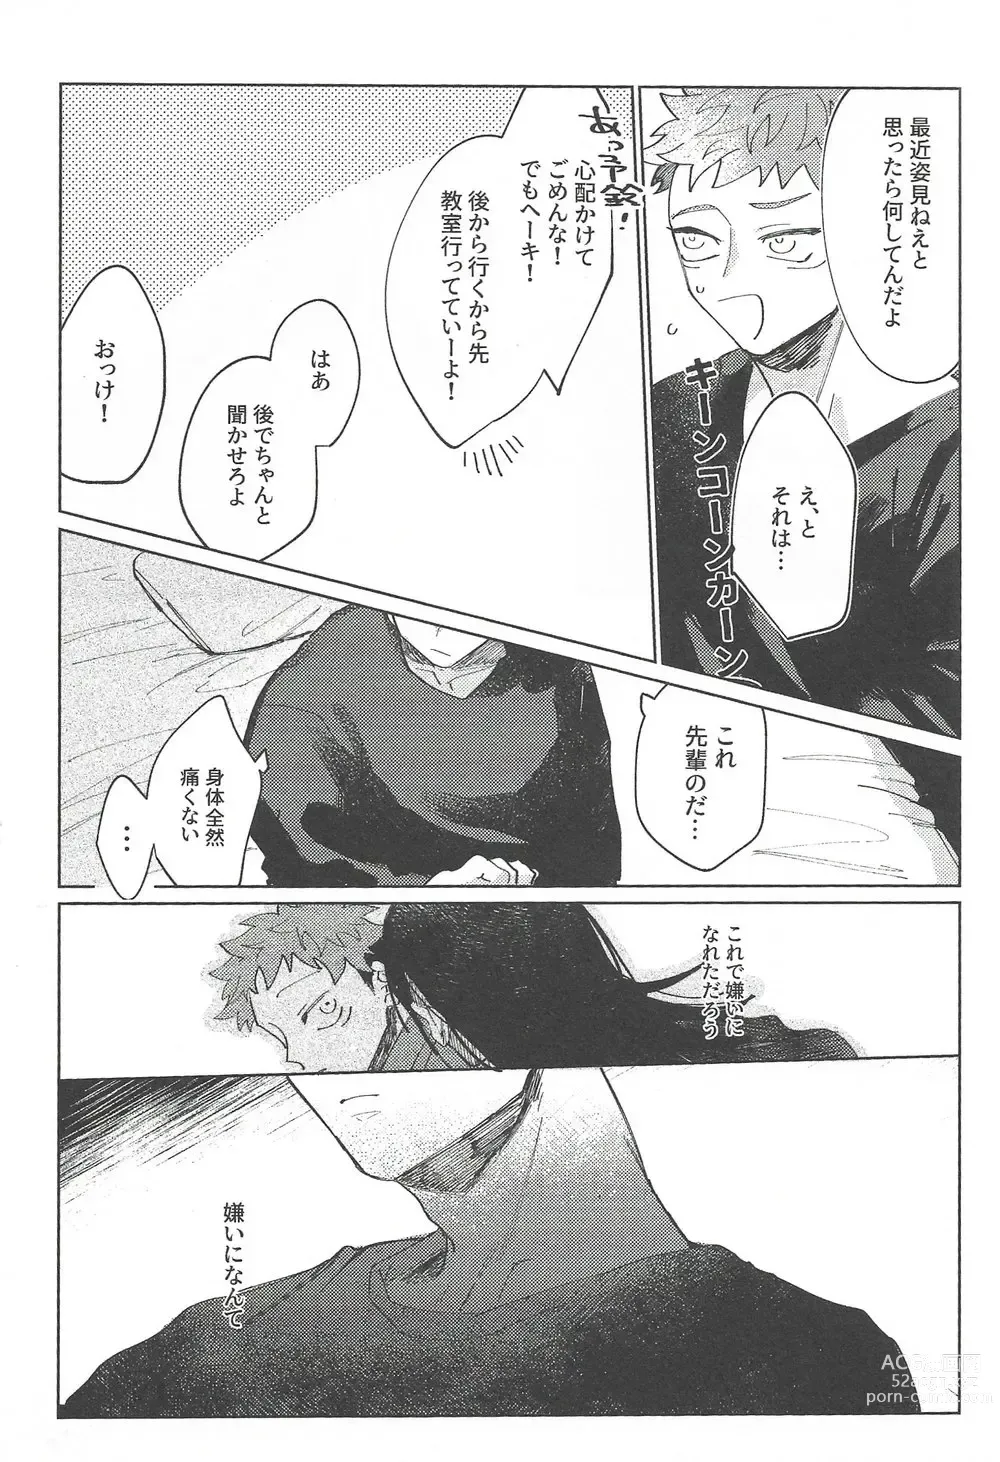 Page 68 of doujinshi Rakuen no Niwa